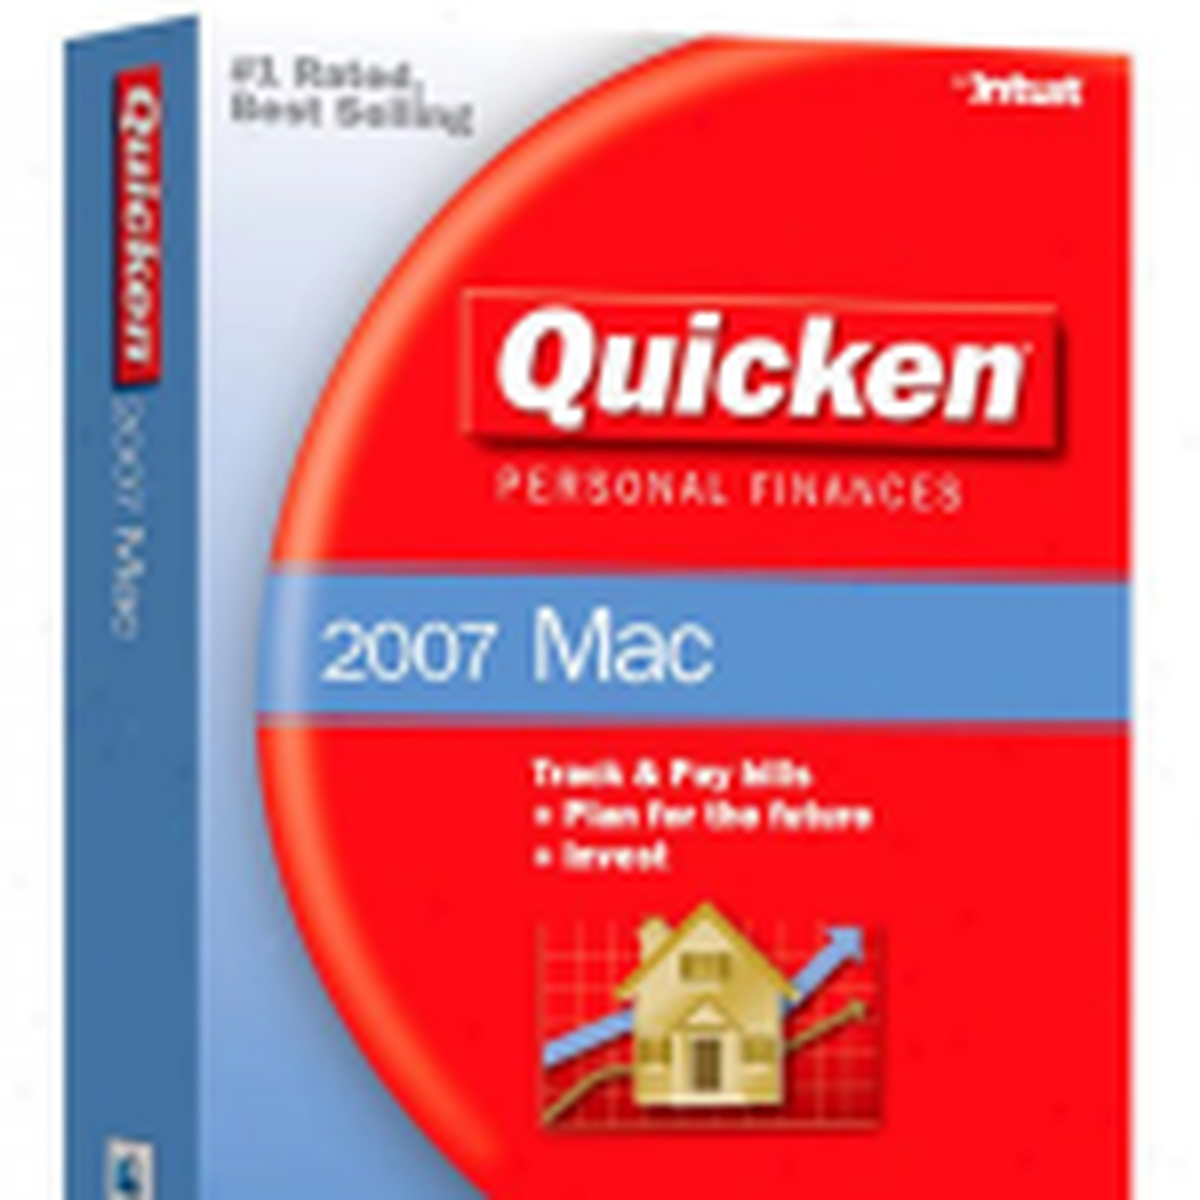 quicken for mac os 10.7